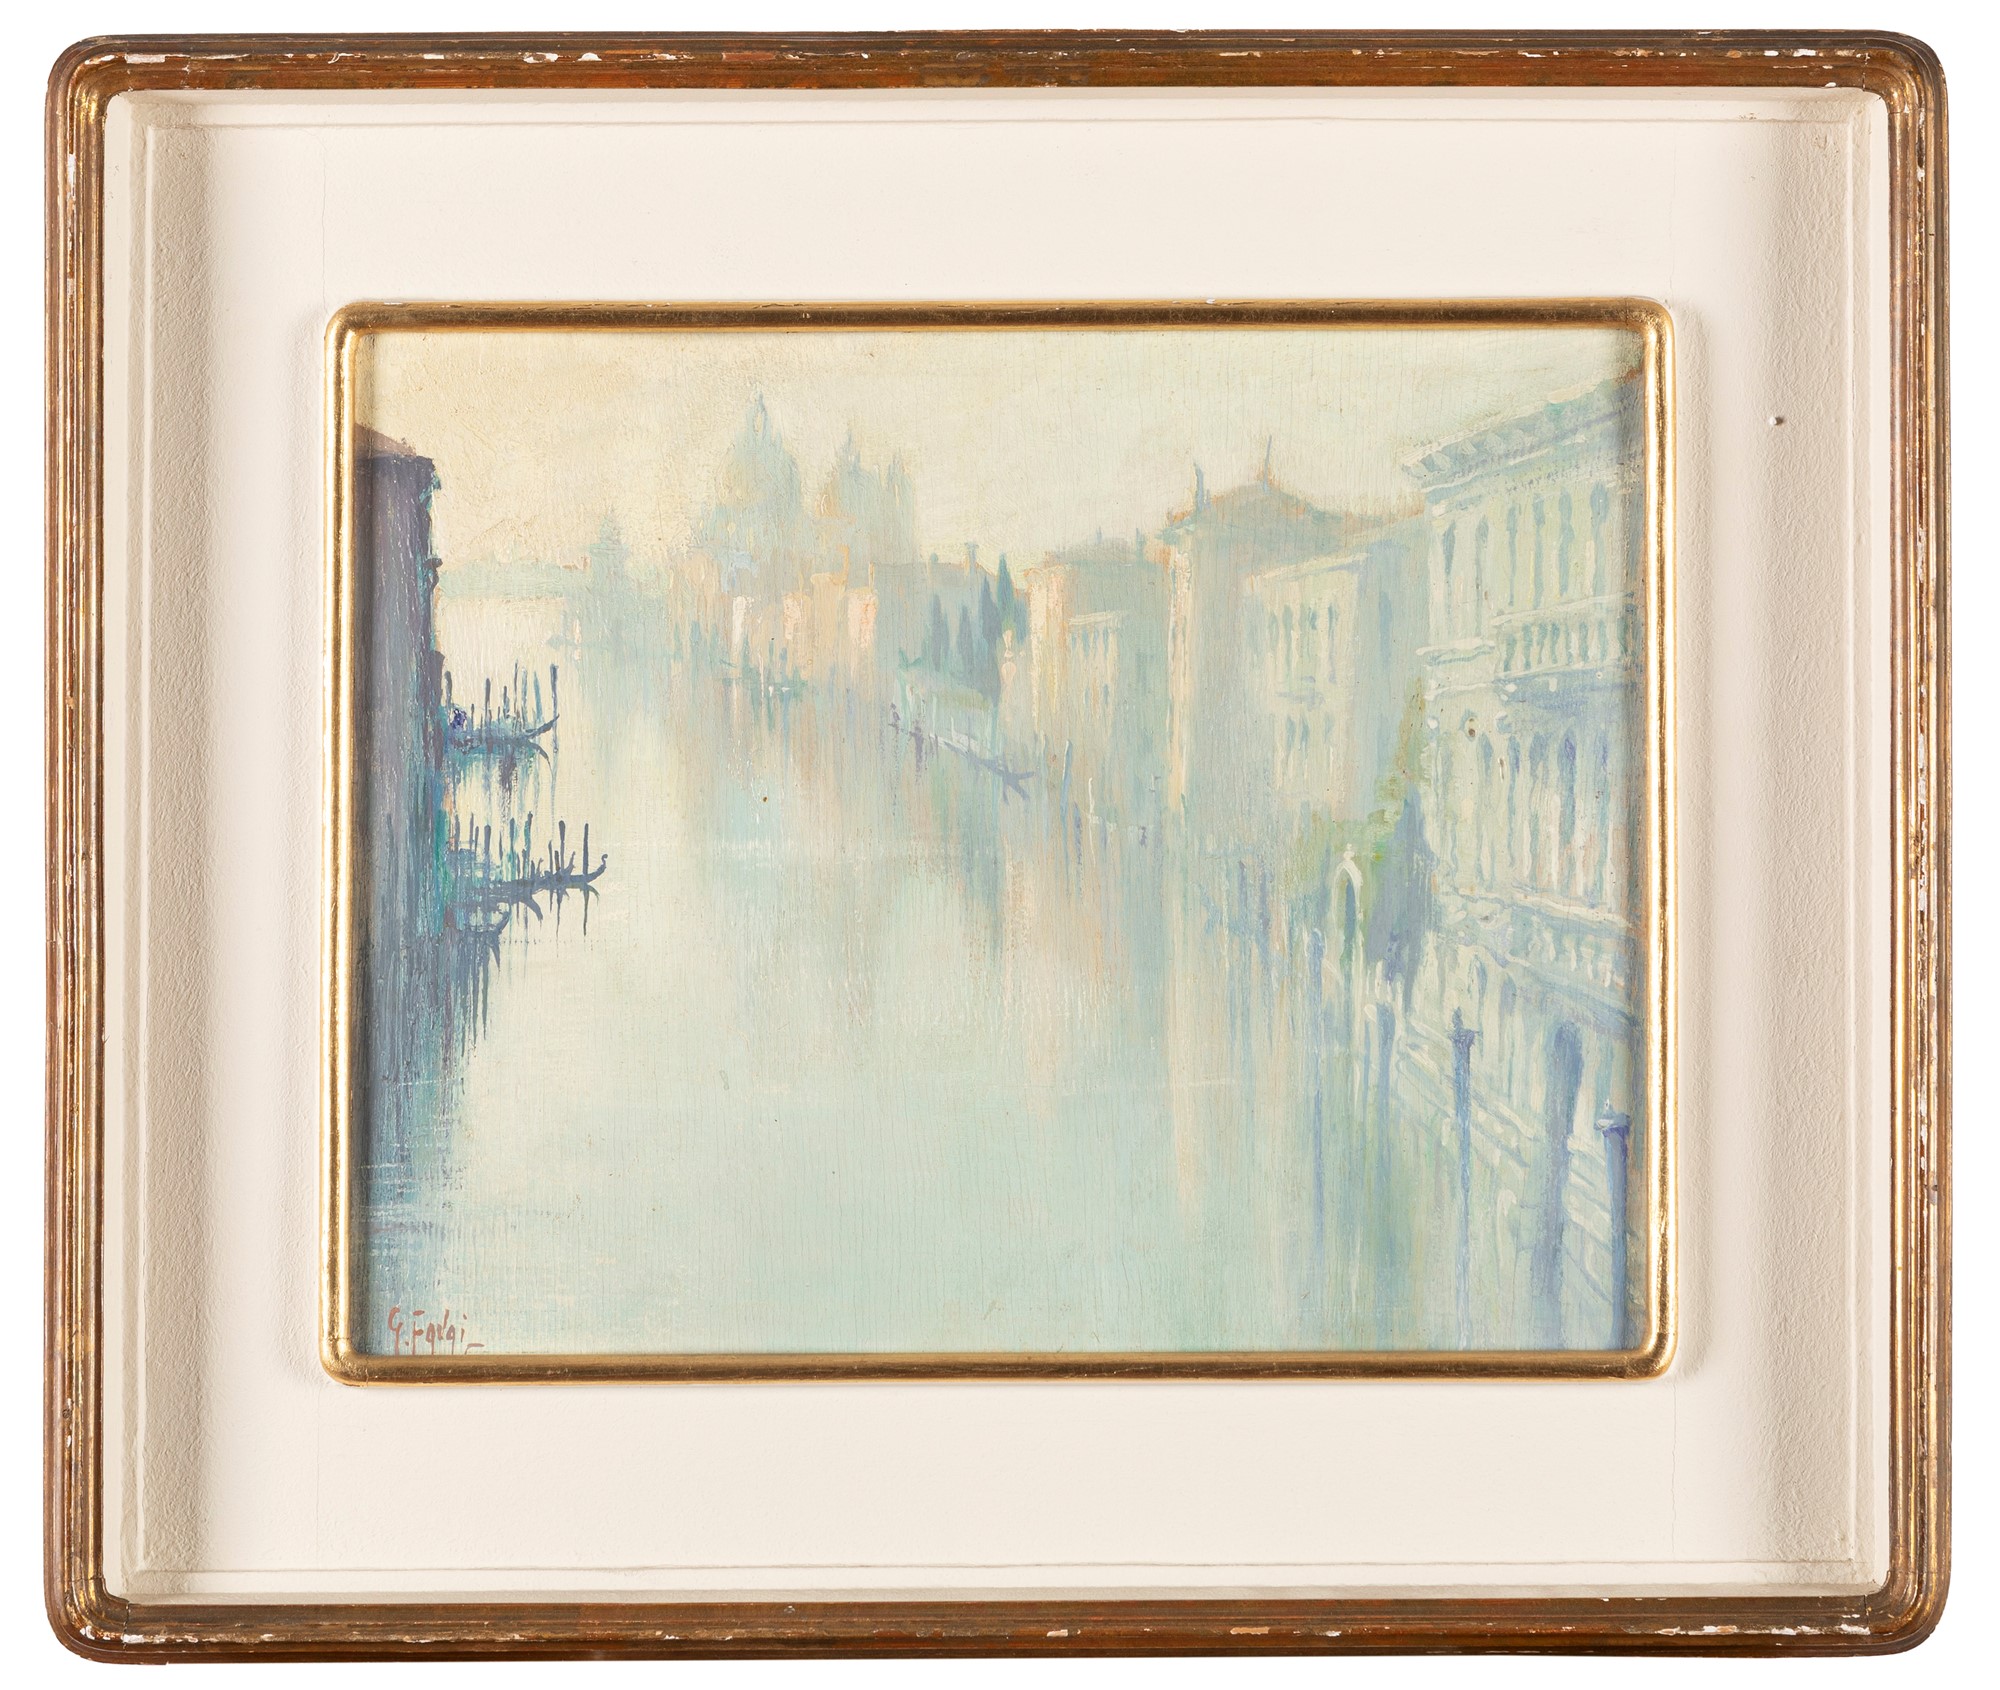 Gennaro Favai (Venezia 1879-1958) - Venice, sunrise from the Accademia bridge - Image 2 of 3